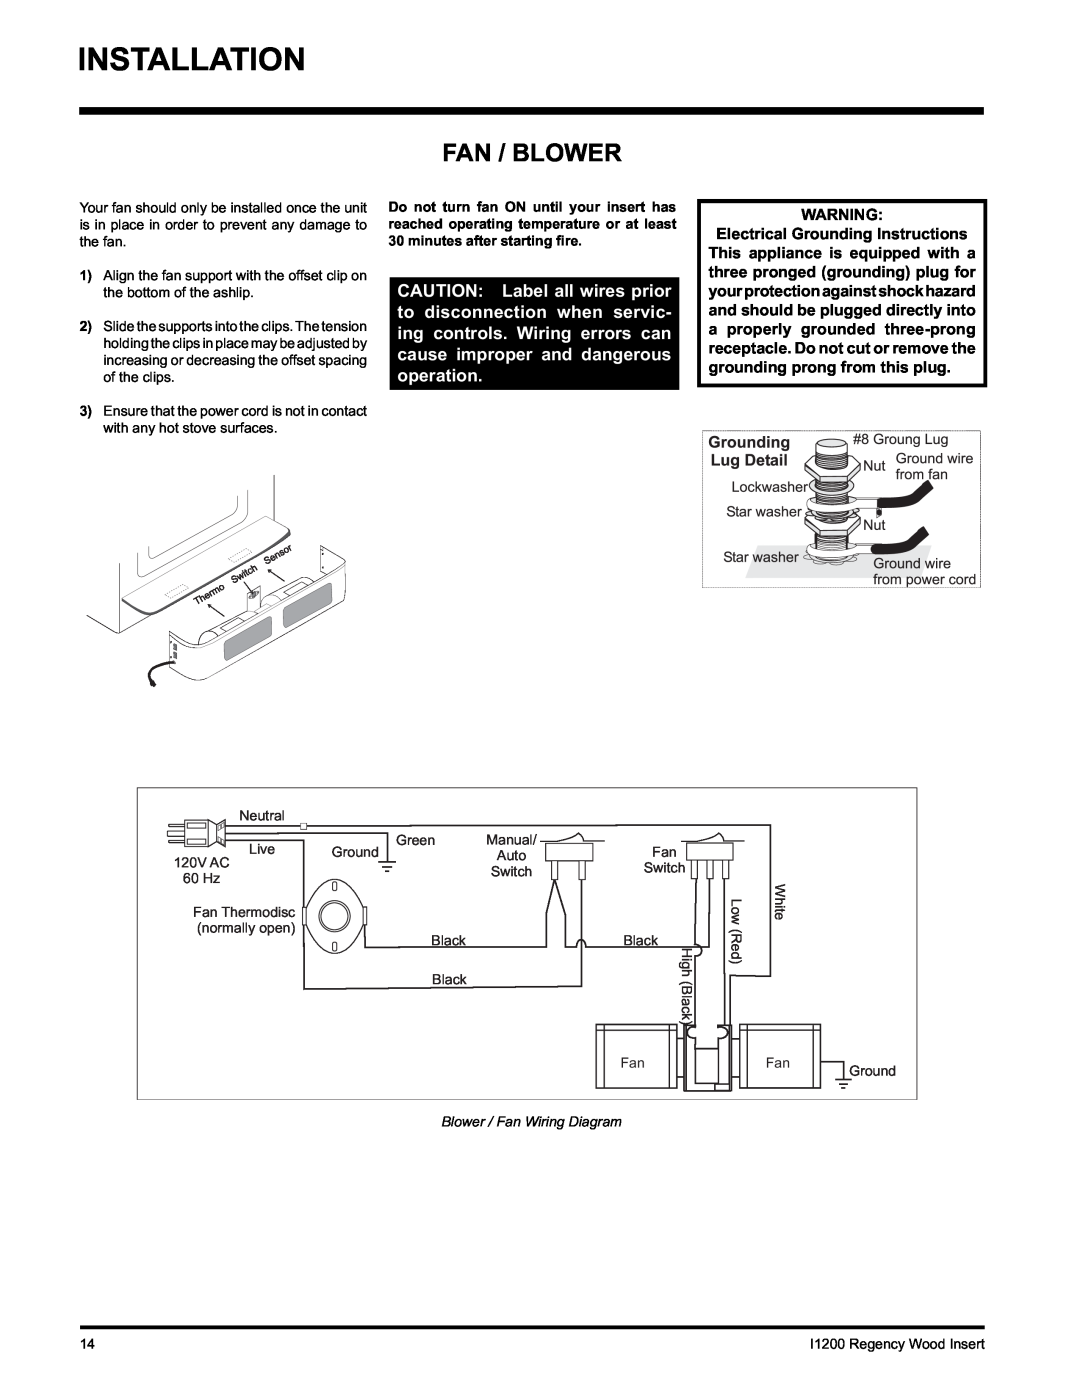 Regency I1200S installation manual Installation, Fan / Blower 